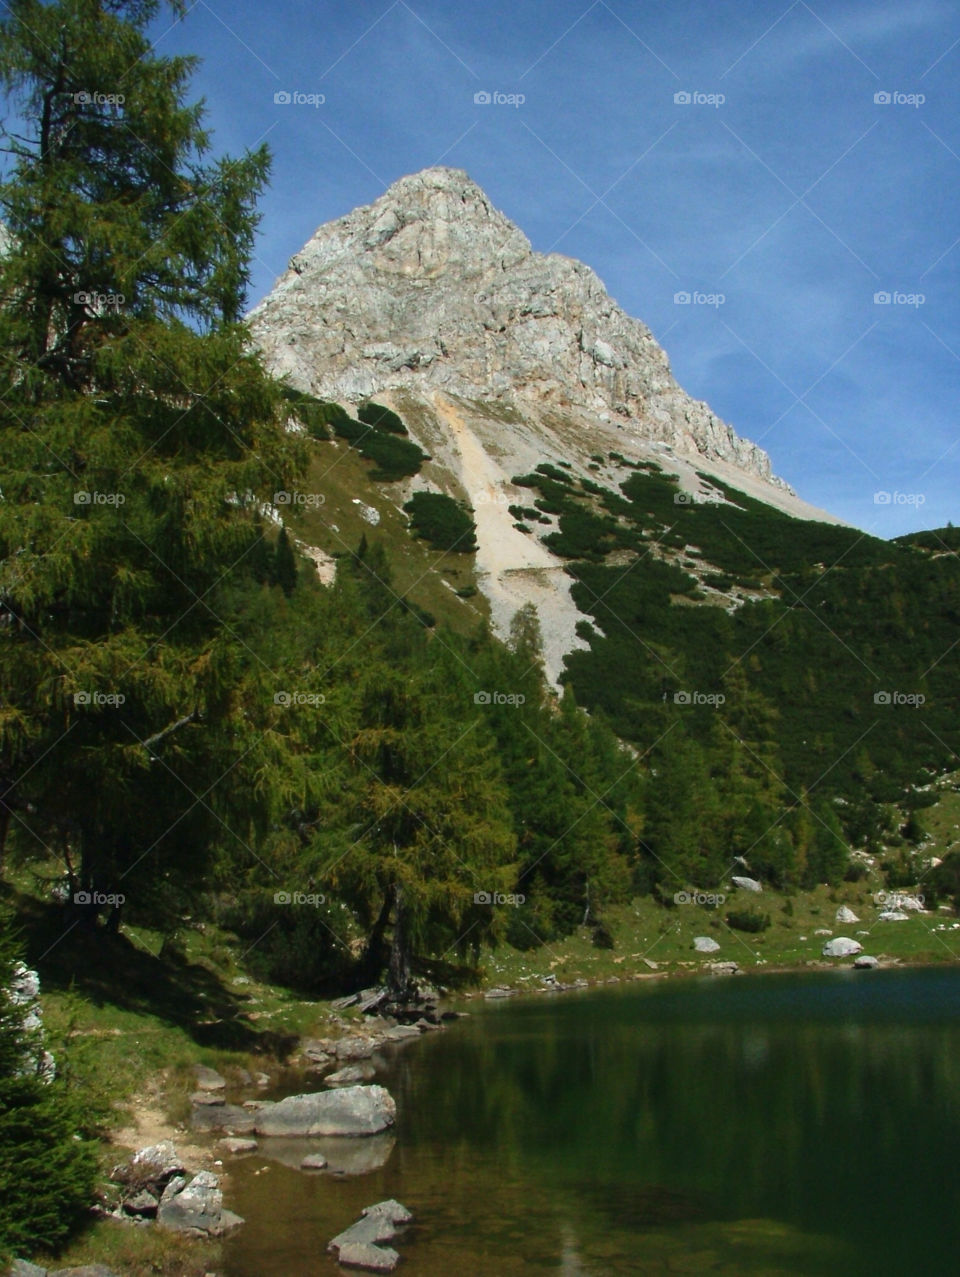 italy mountain trees lake by uolza